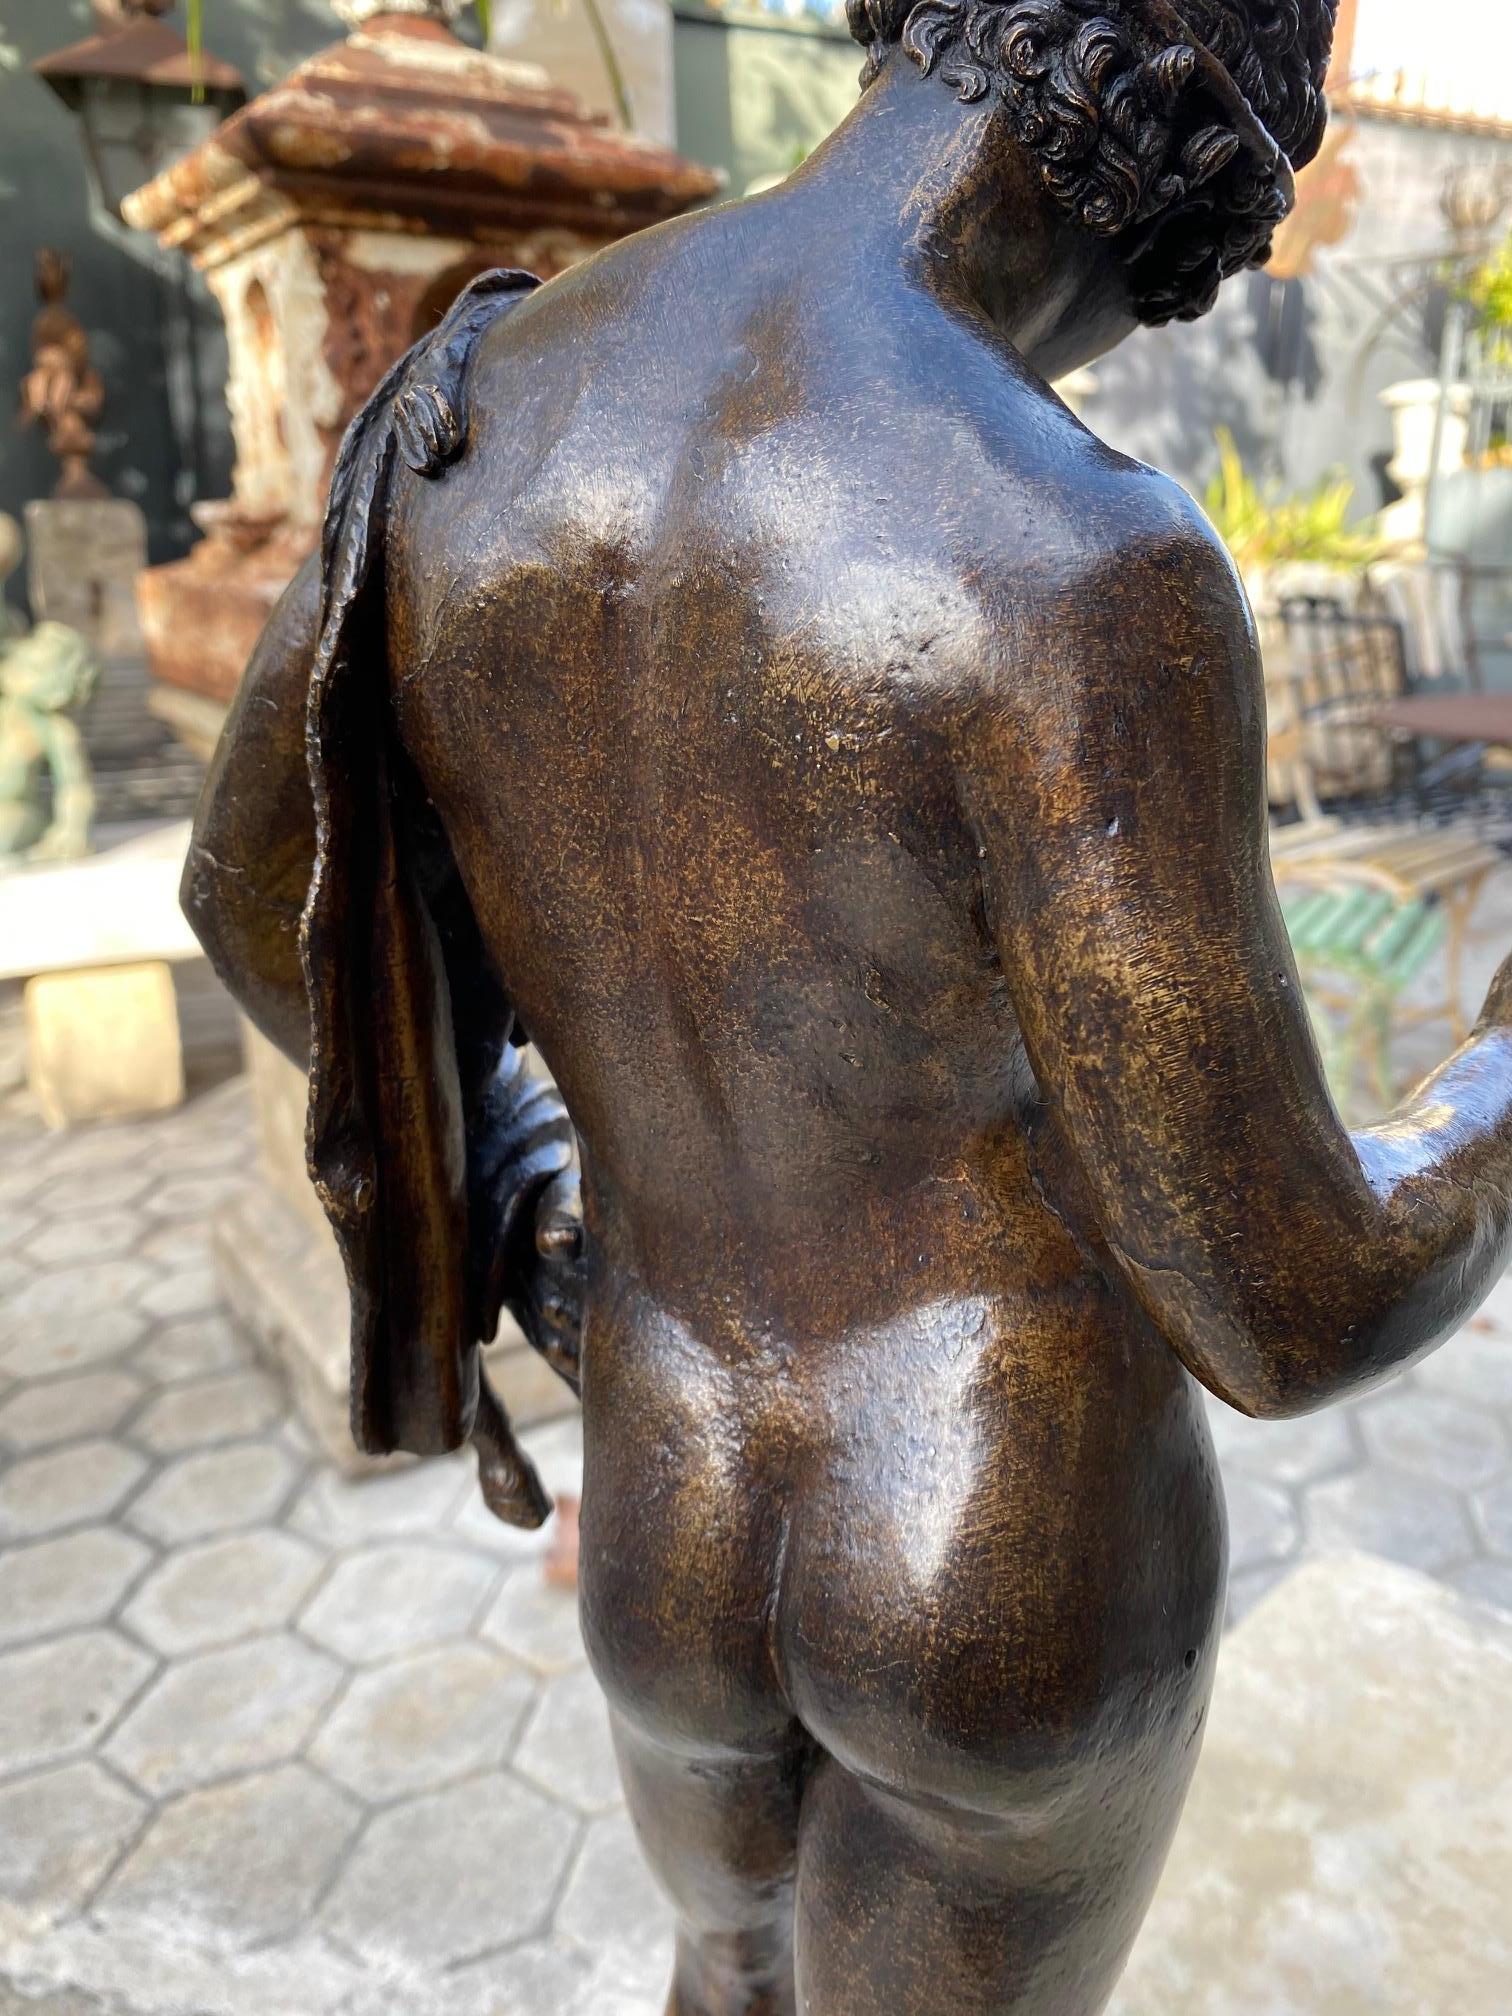 European 19th Century Bronze Sculpture of Dionysus Narcissus Statue Grand Tour Decorative